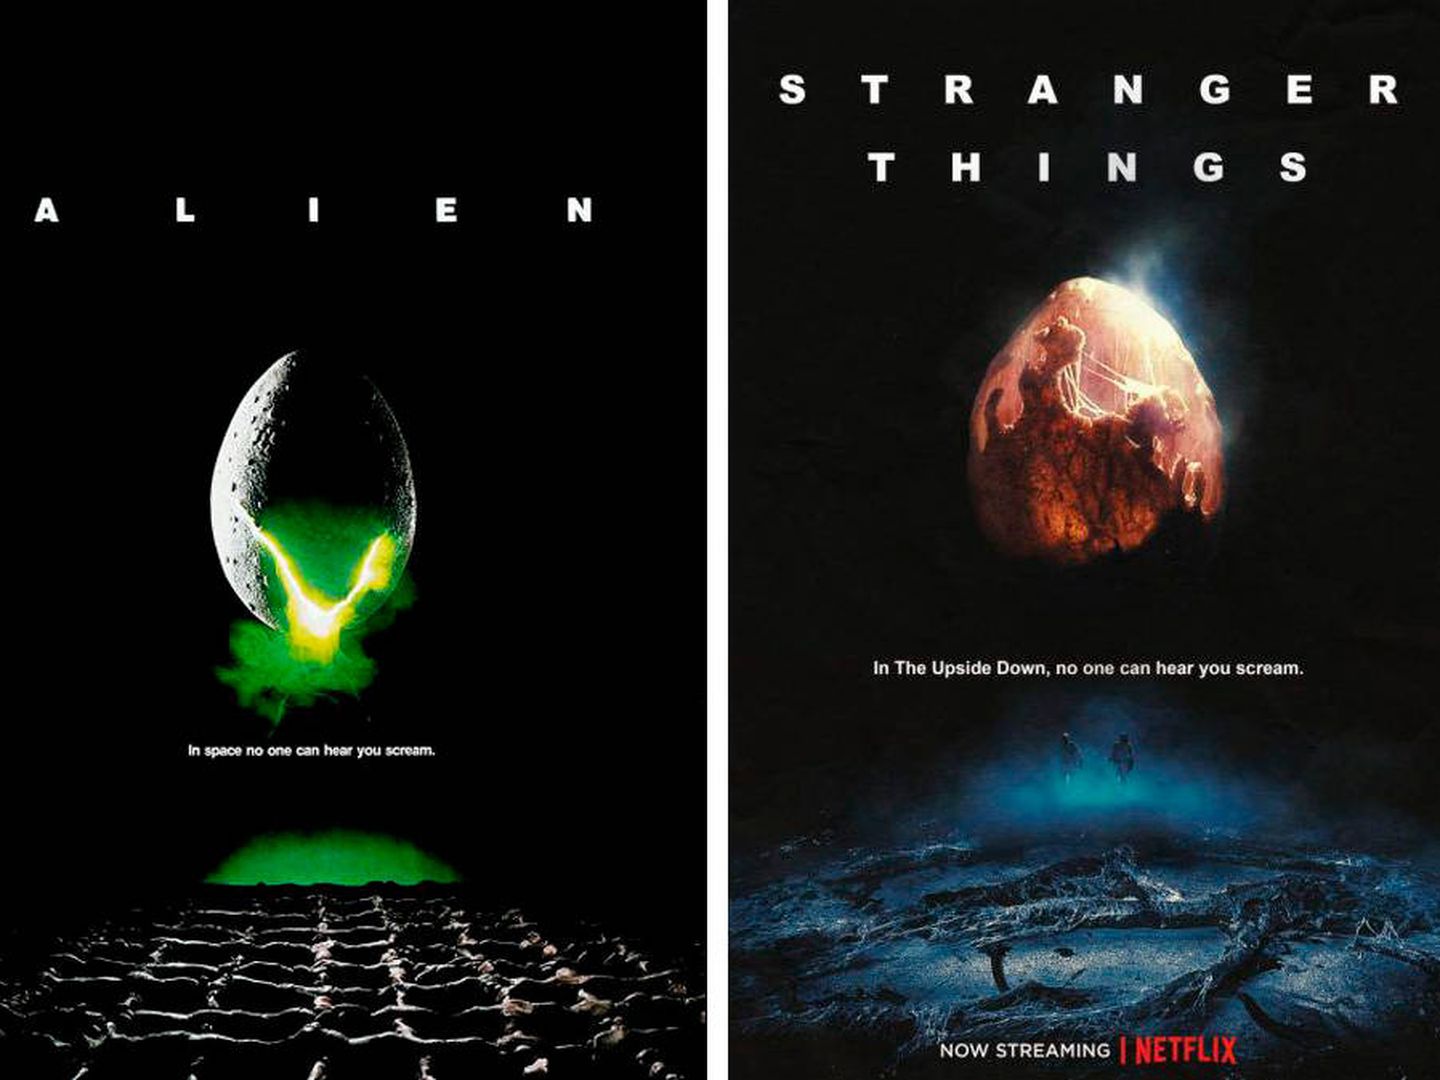 El mítico poster de la película de Ridley Scott y su versión 'Stranger Things'